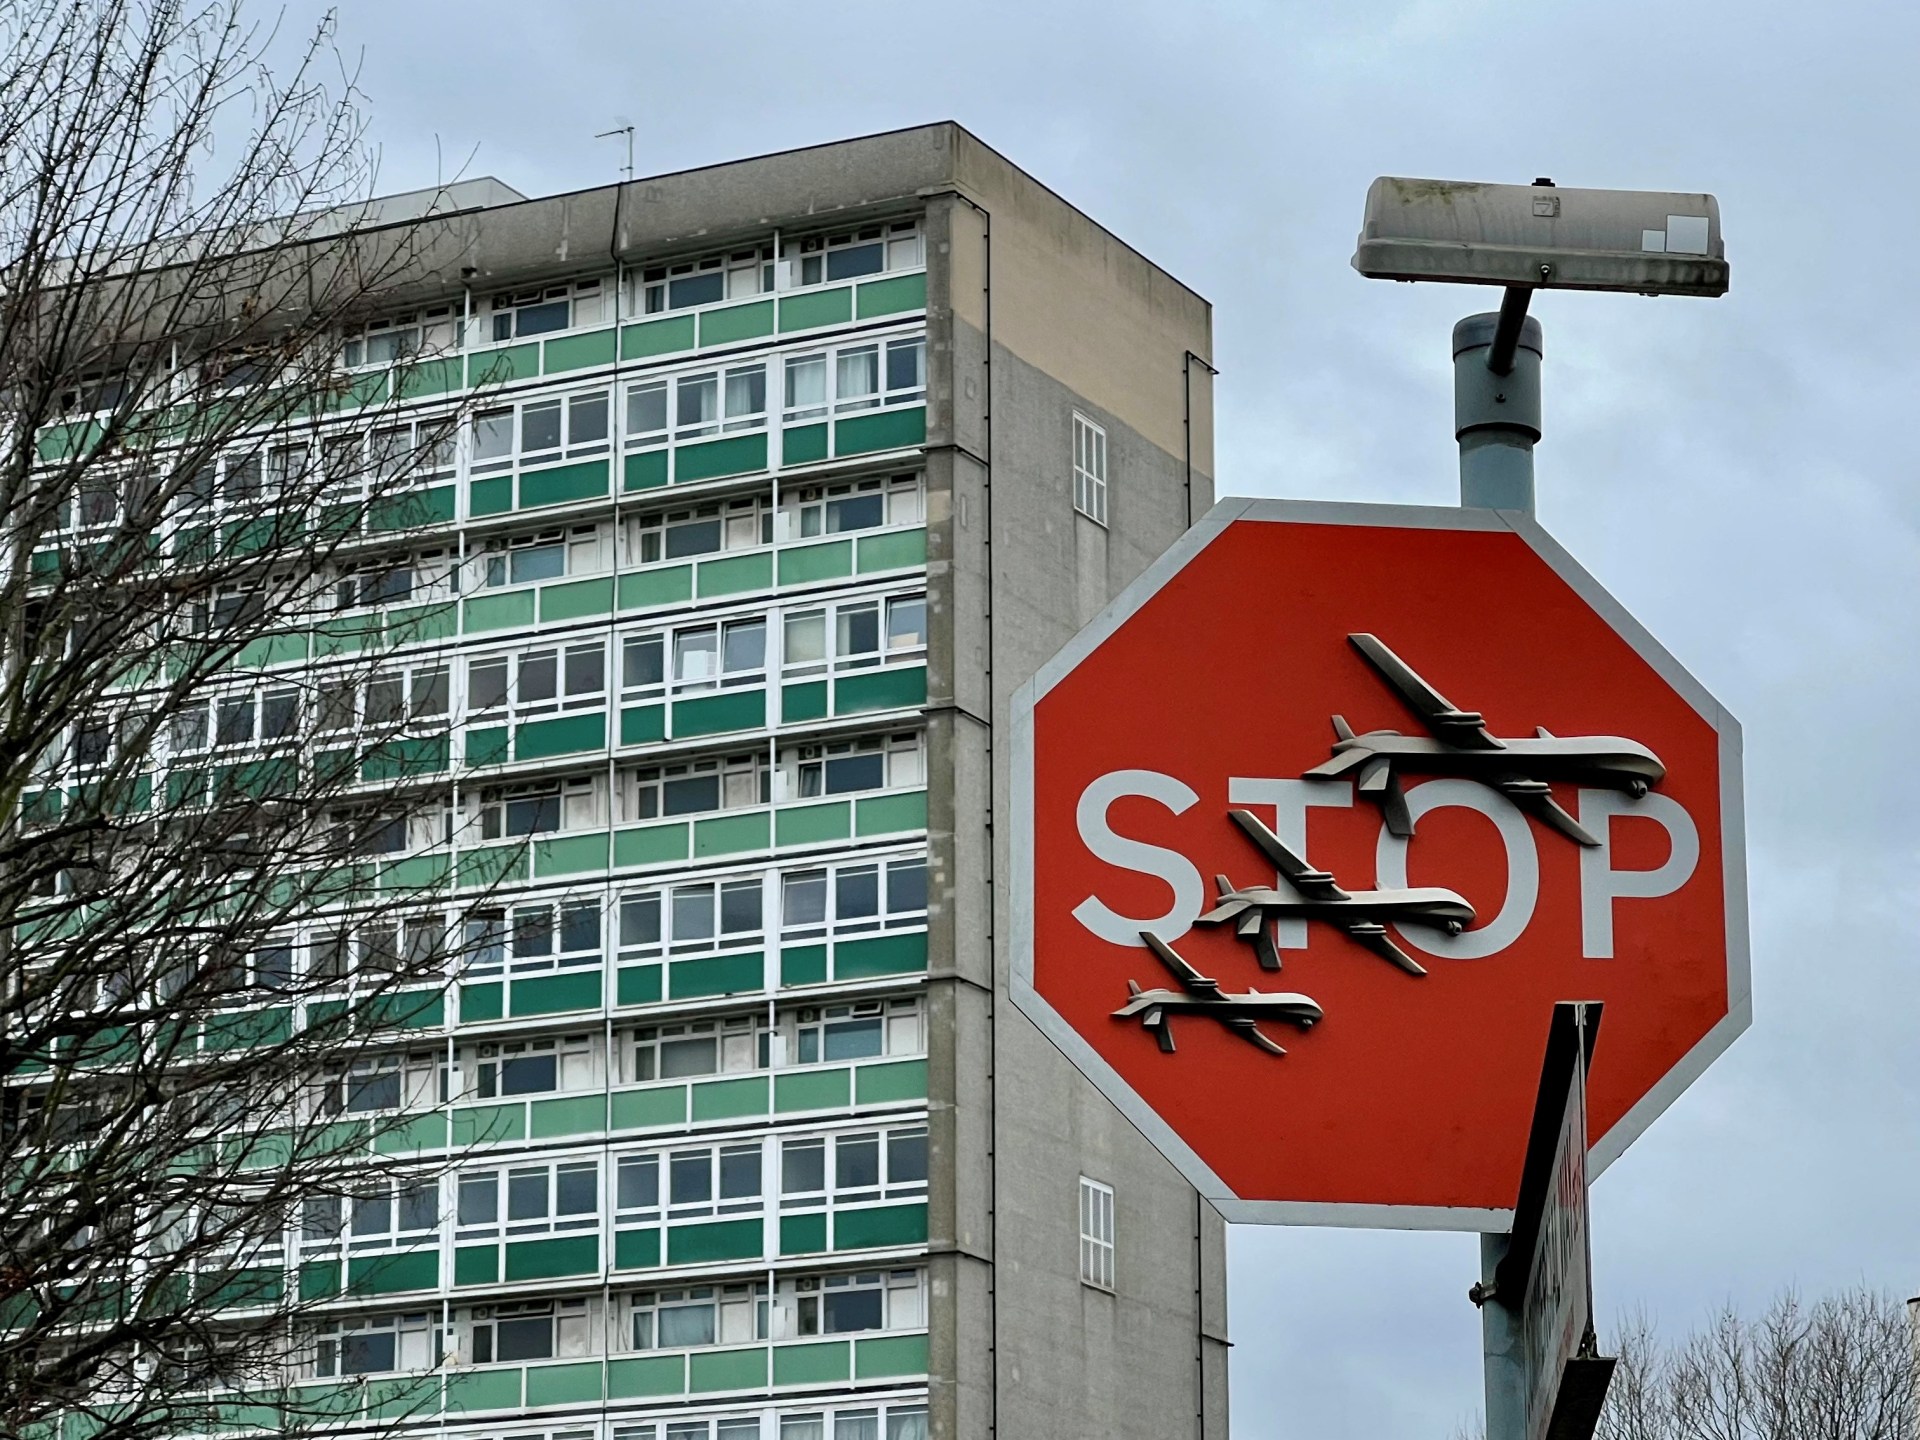 Brytyjska policja aresztuje mężczyznę po kradzieży dzieła Banksy'ego z londyńskiej ulicy |  Wiadomości ze sztuki i kultury